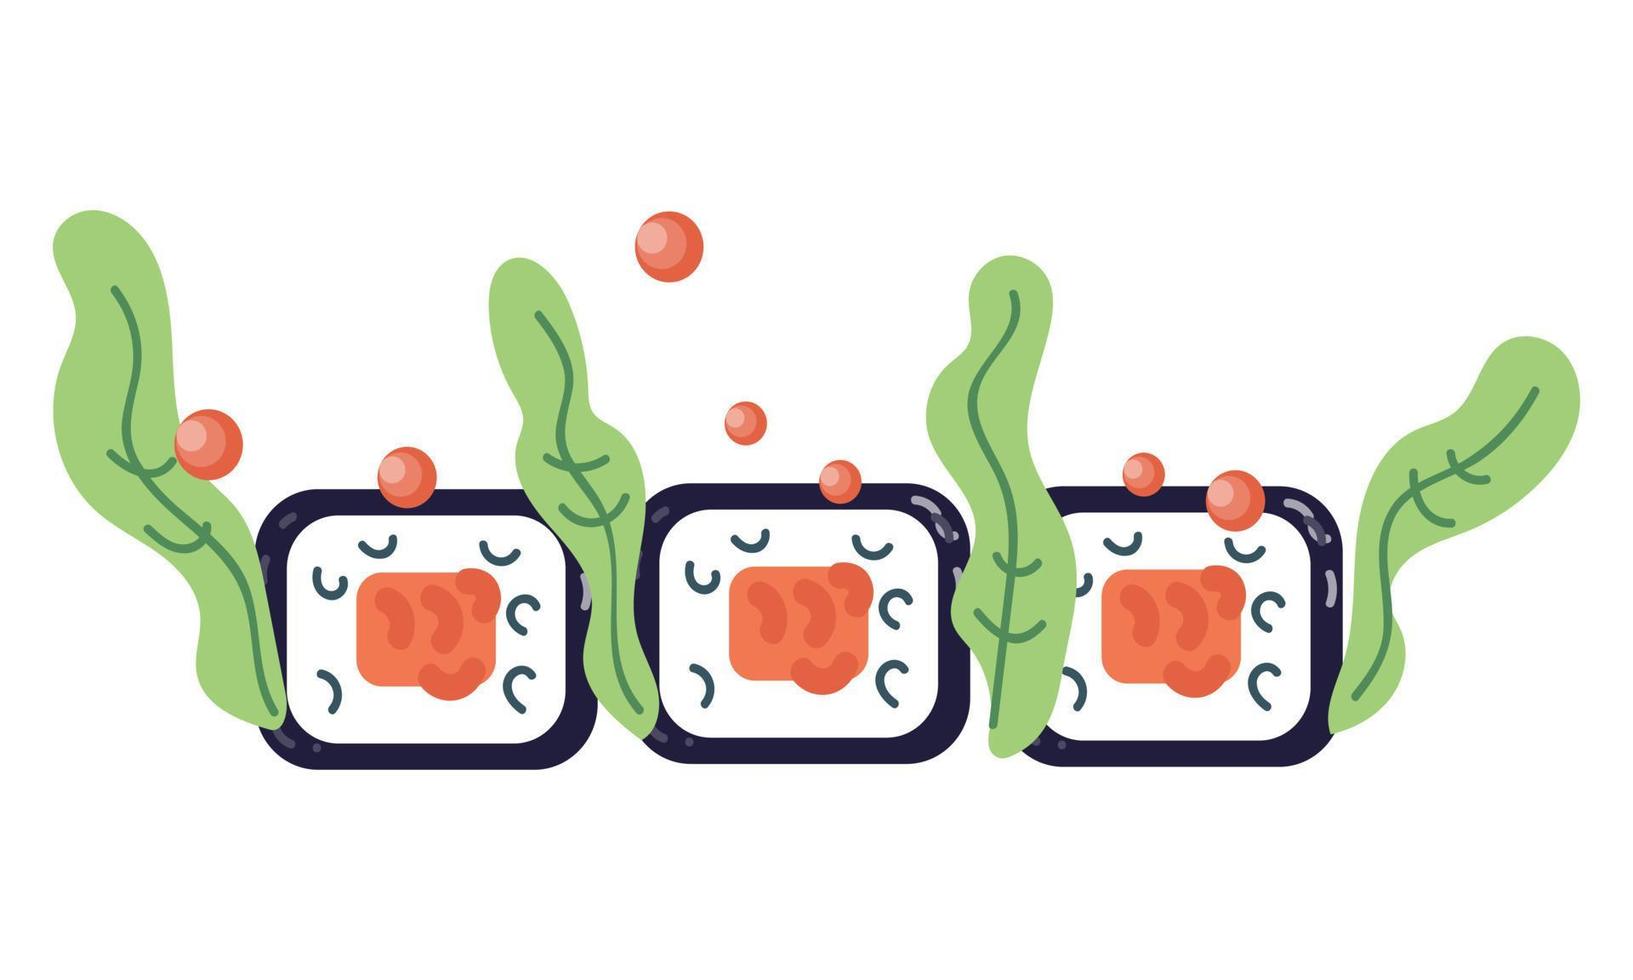 símbolo de sushi o icono del menú de cocina japonesa, ilustración de vector de dibujos animados plana aislada en fondo blanco. restaurante asiático o elemento del logotipo del servicio de entrega de alimentos.